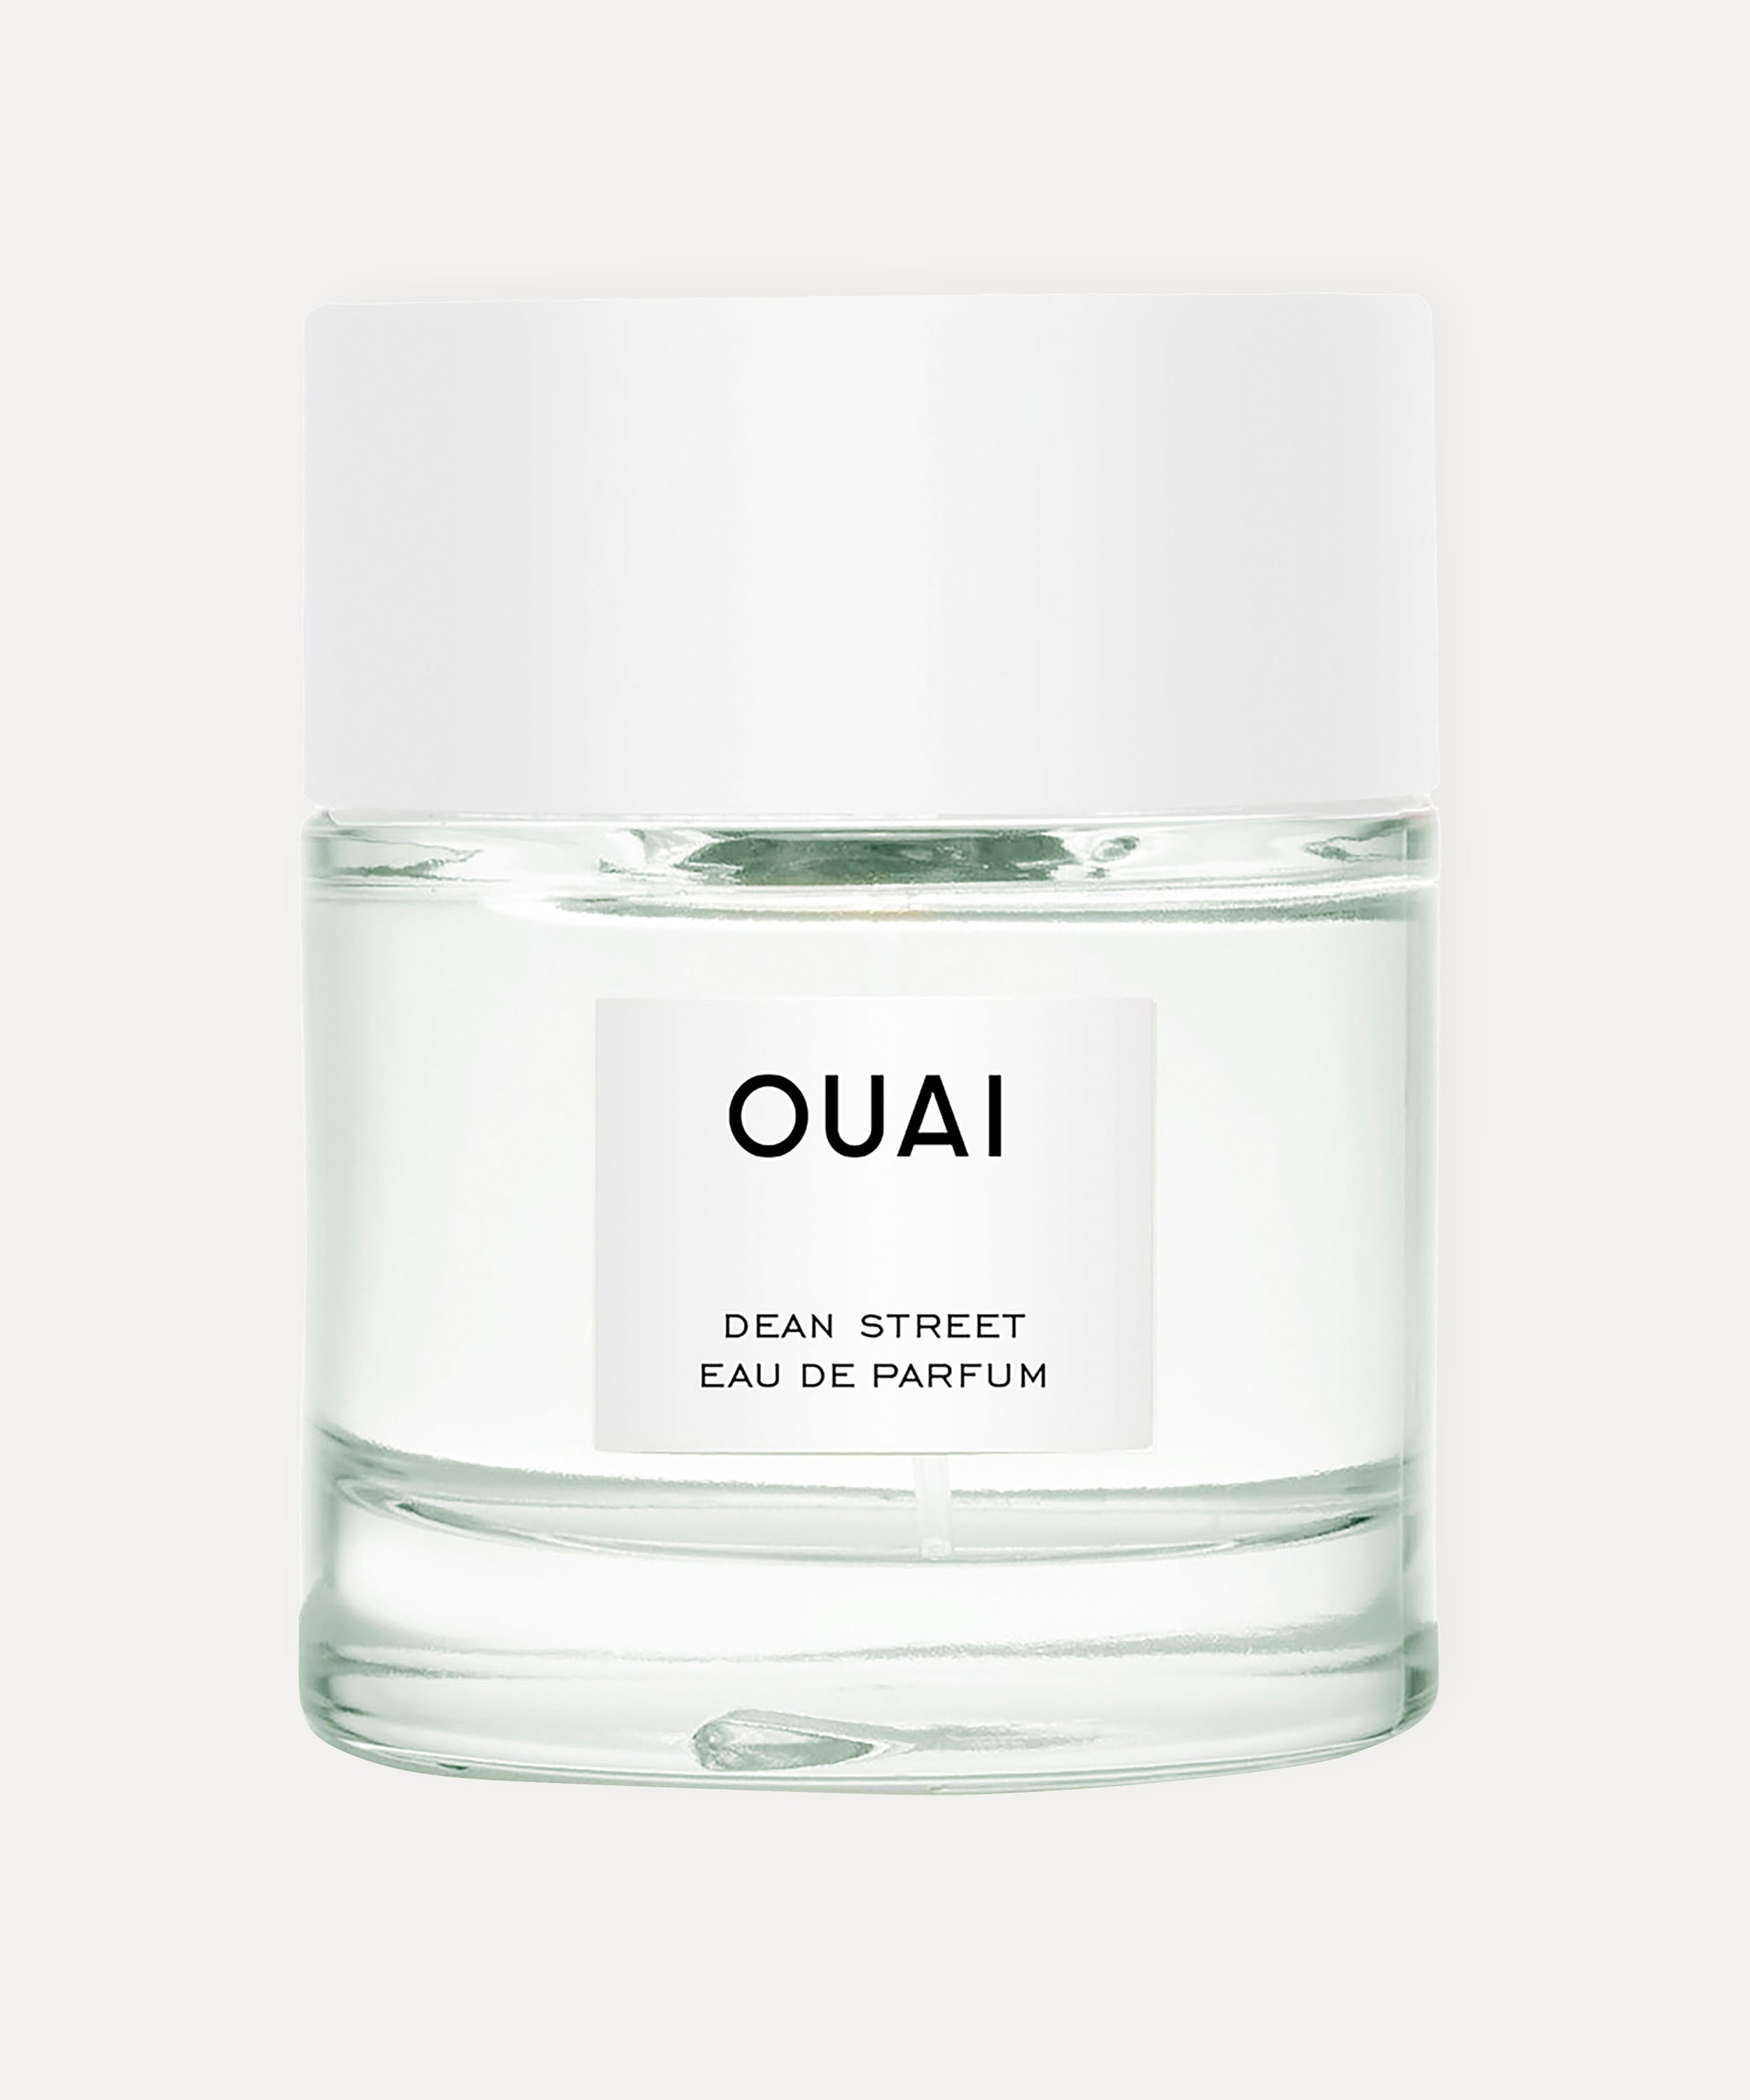 OUAI - Dean Street Eau de Parfum 50ml image number 0